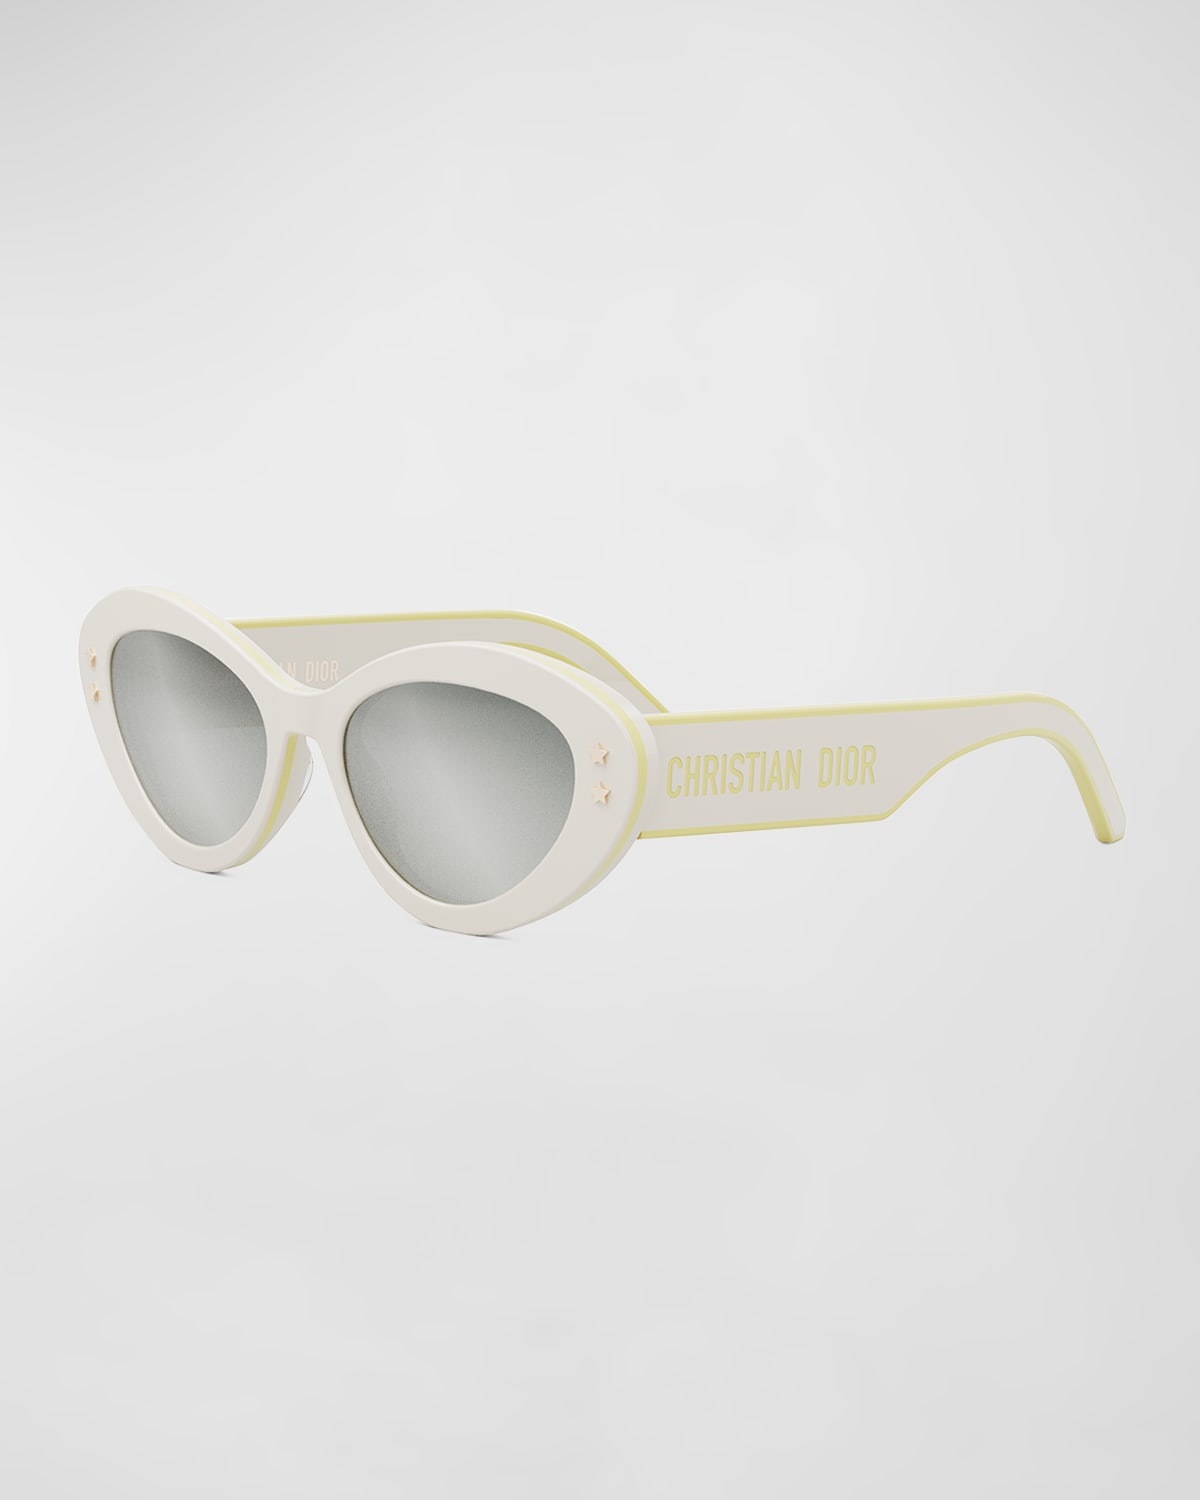 DiorPacific B1U Sunglasses